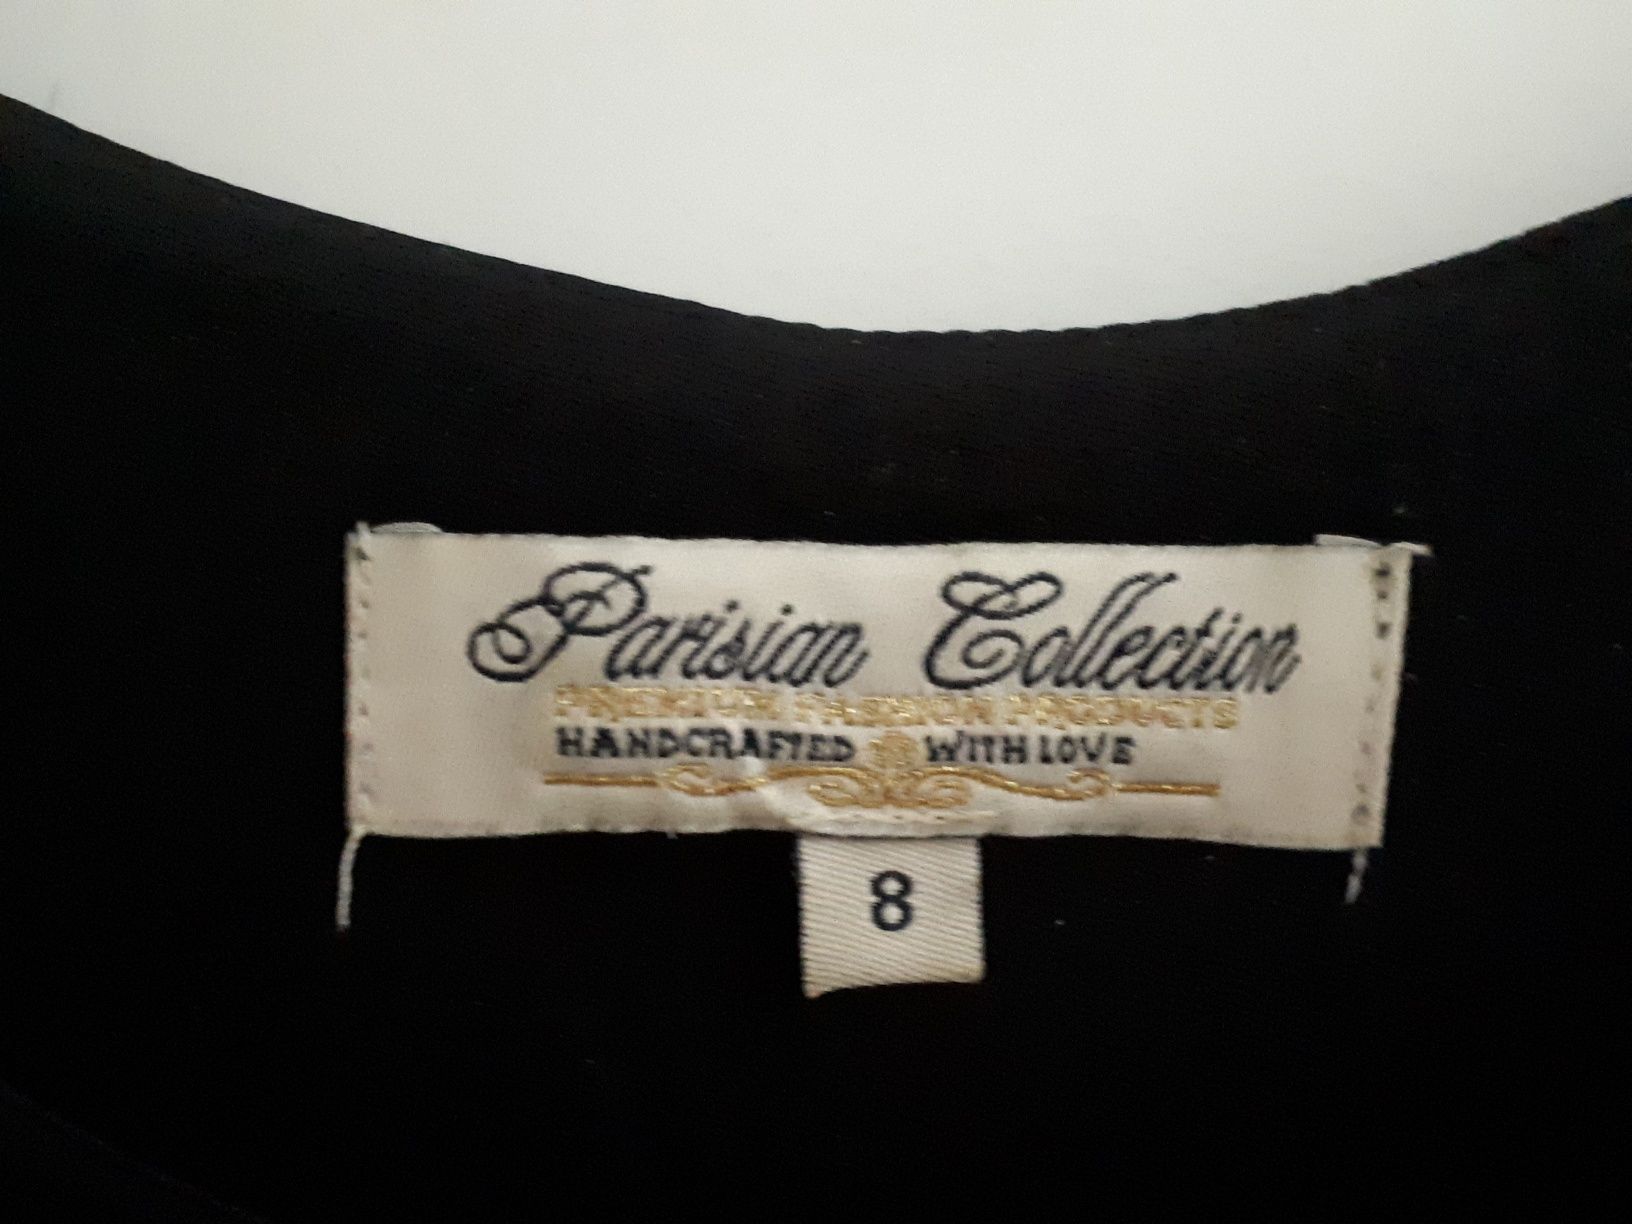 Sukienka rozmiar s parisian collection czarna wzór w groszki białe